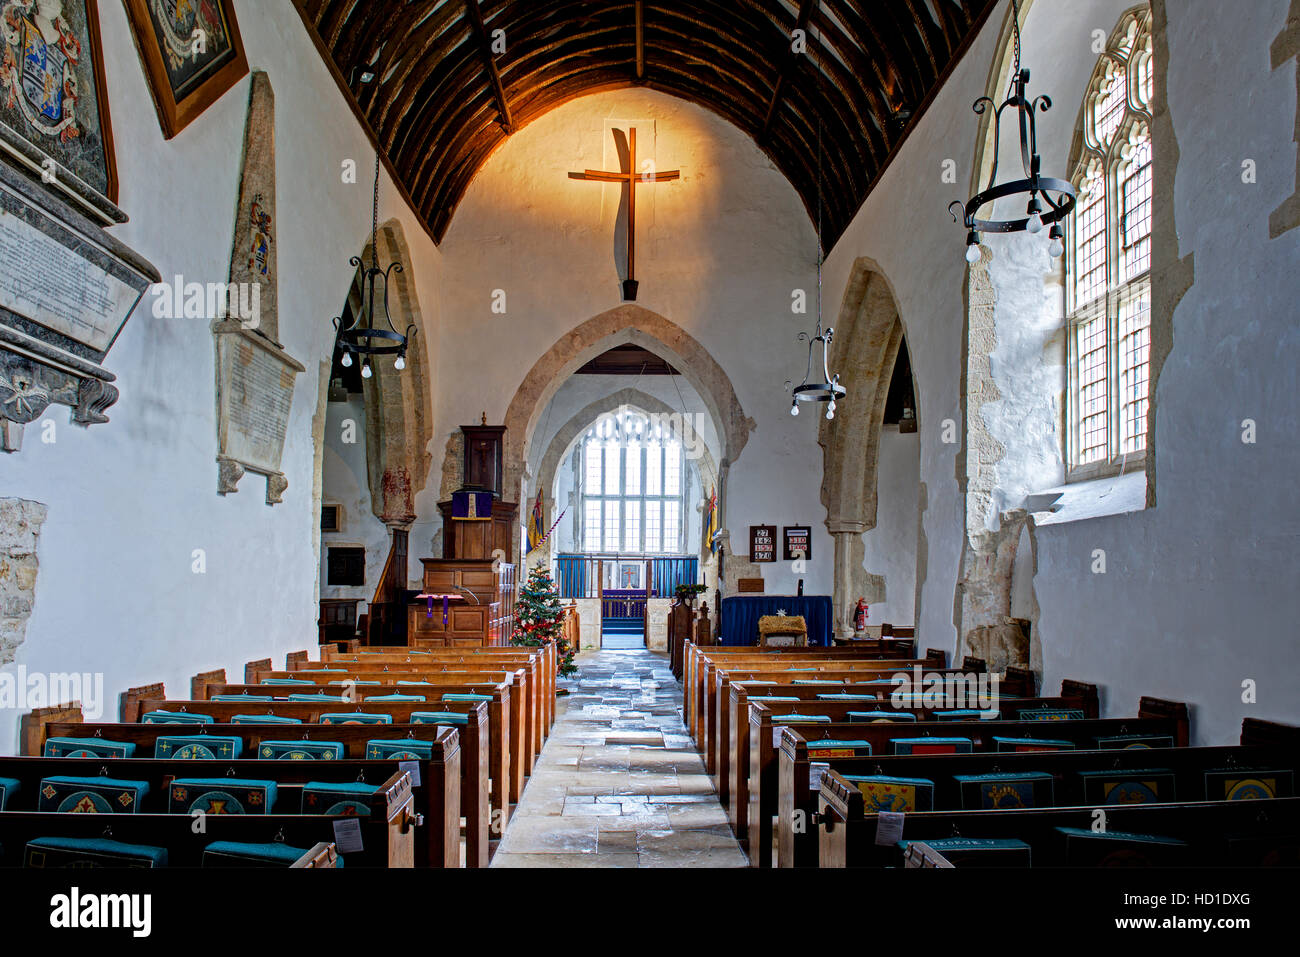 L'intérieur de l'église St Winifred, Branscombe, Devon, Angleterre, Royaume-Uni Banque D'Images